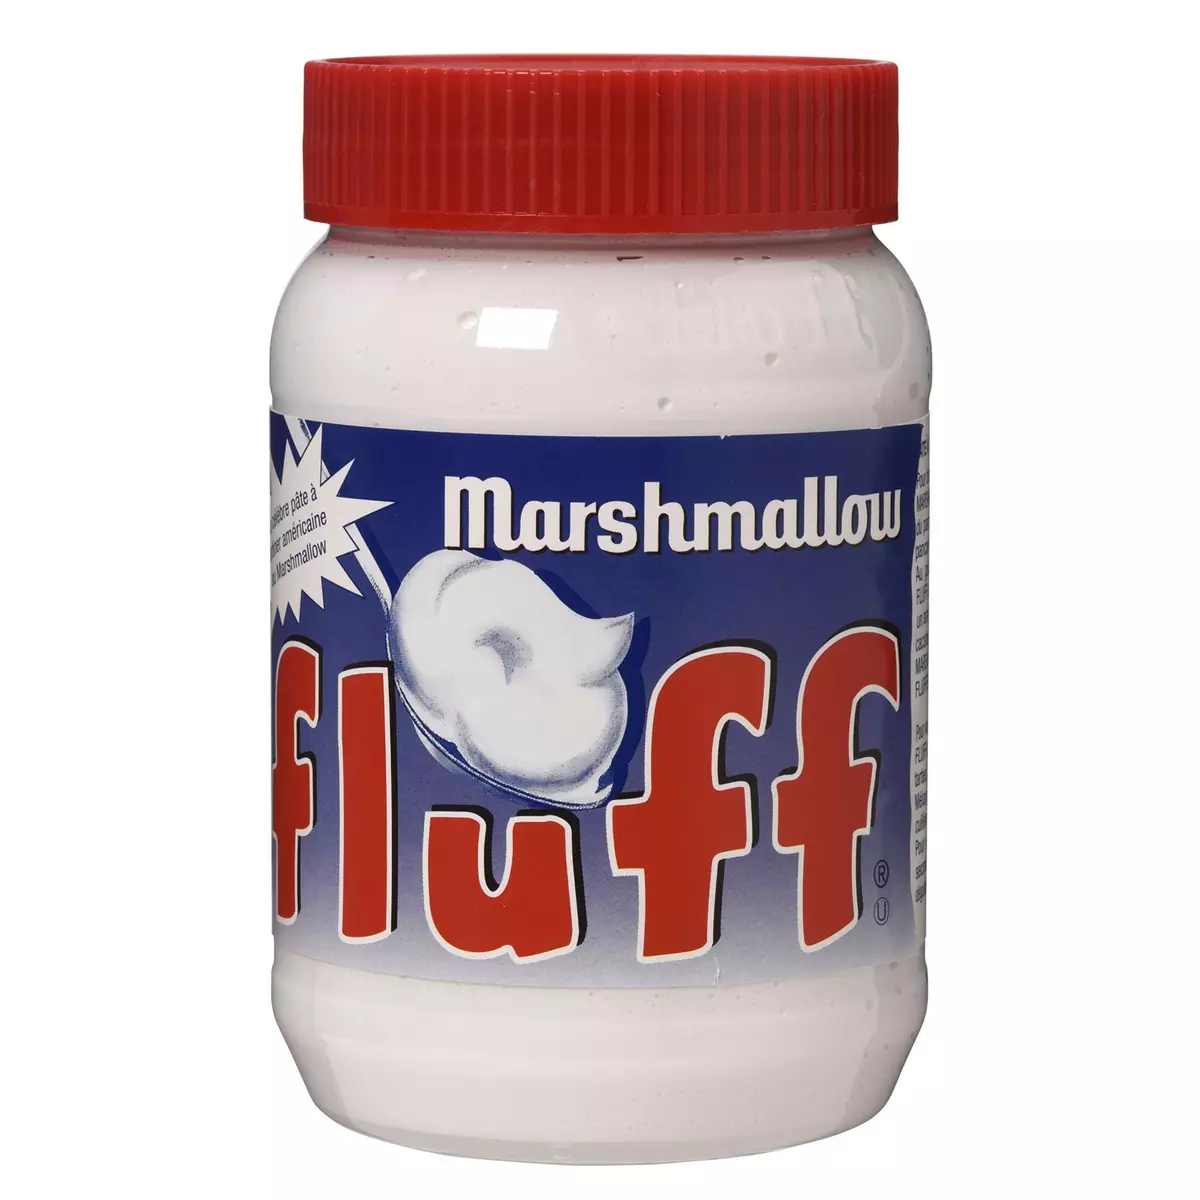 Fluff Marshmallow vanille - 213 g